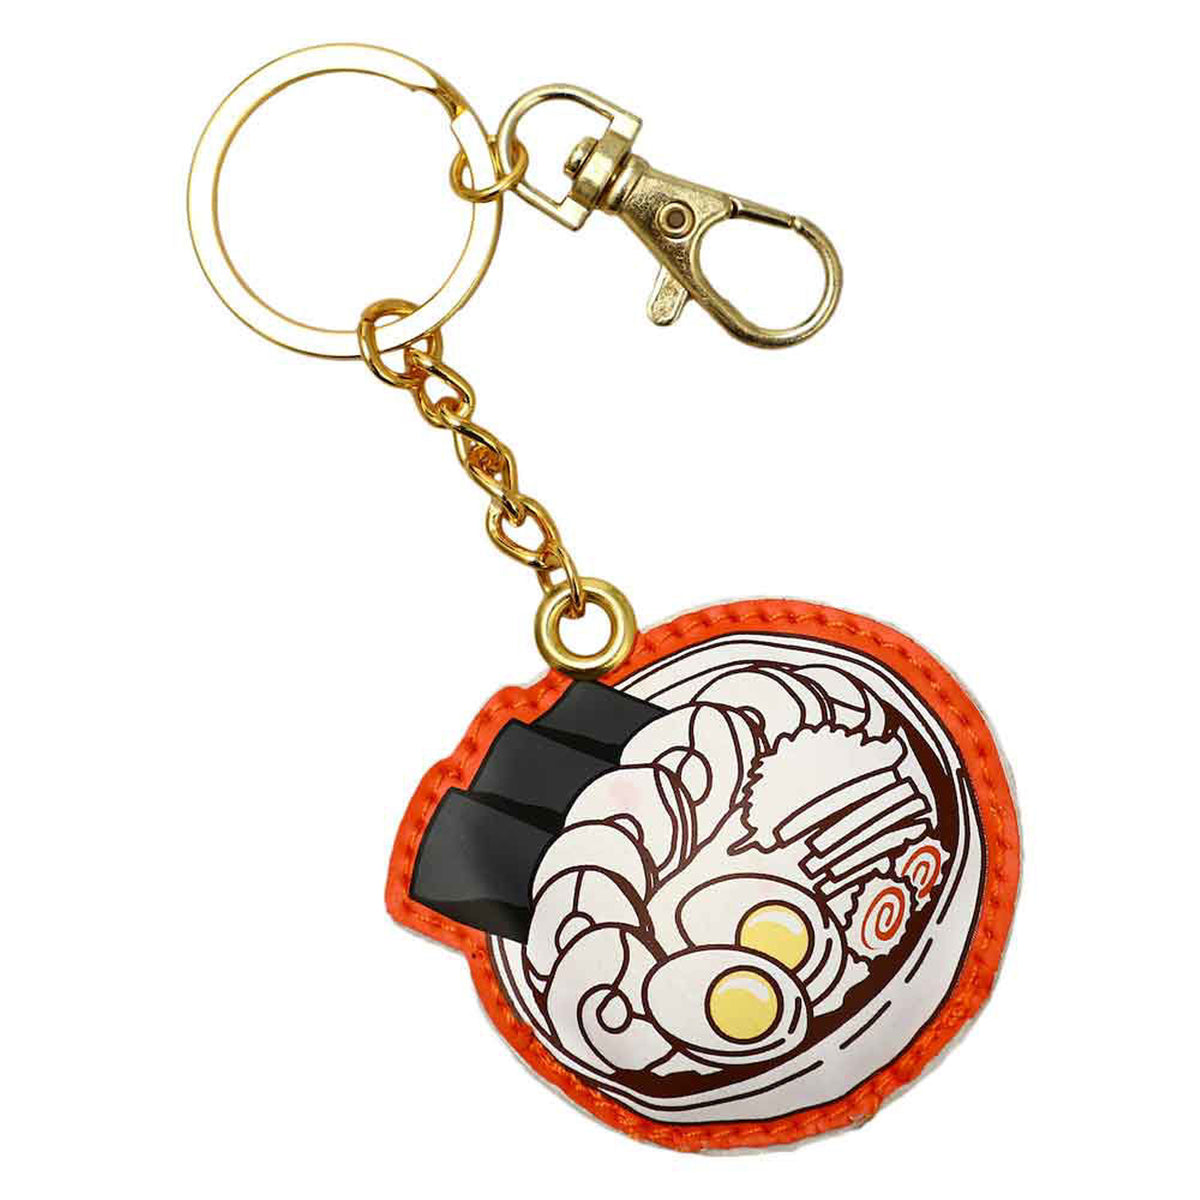 Naruto Ichiraku Ramen Puffy Keychain